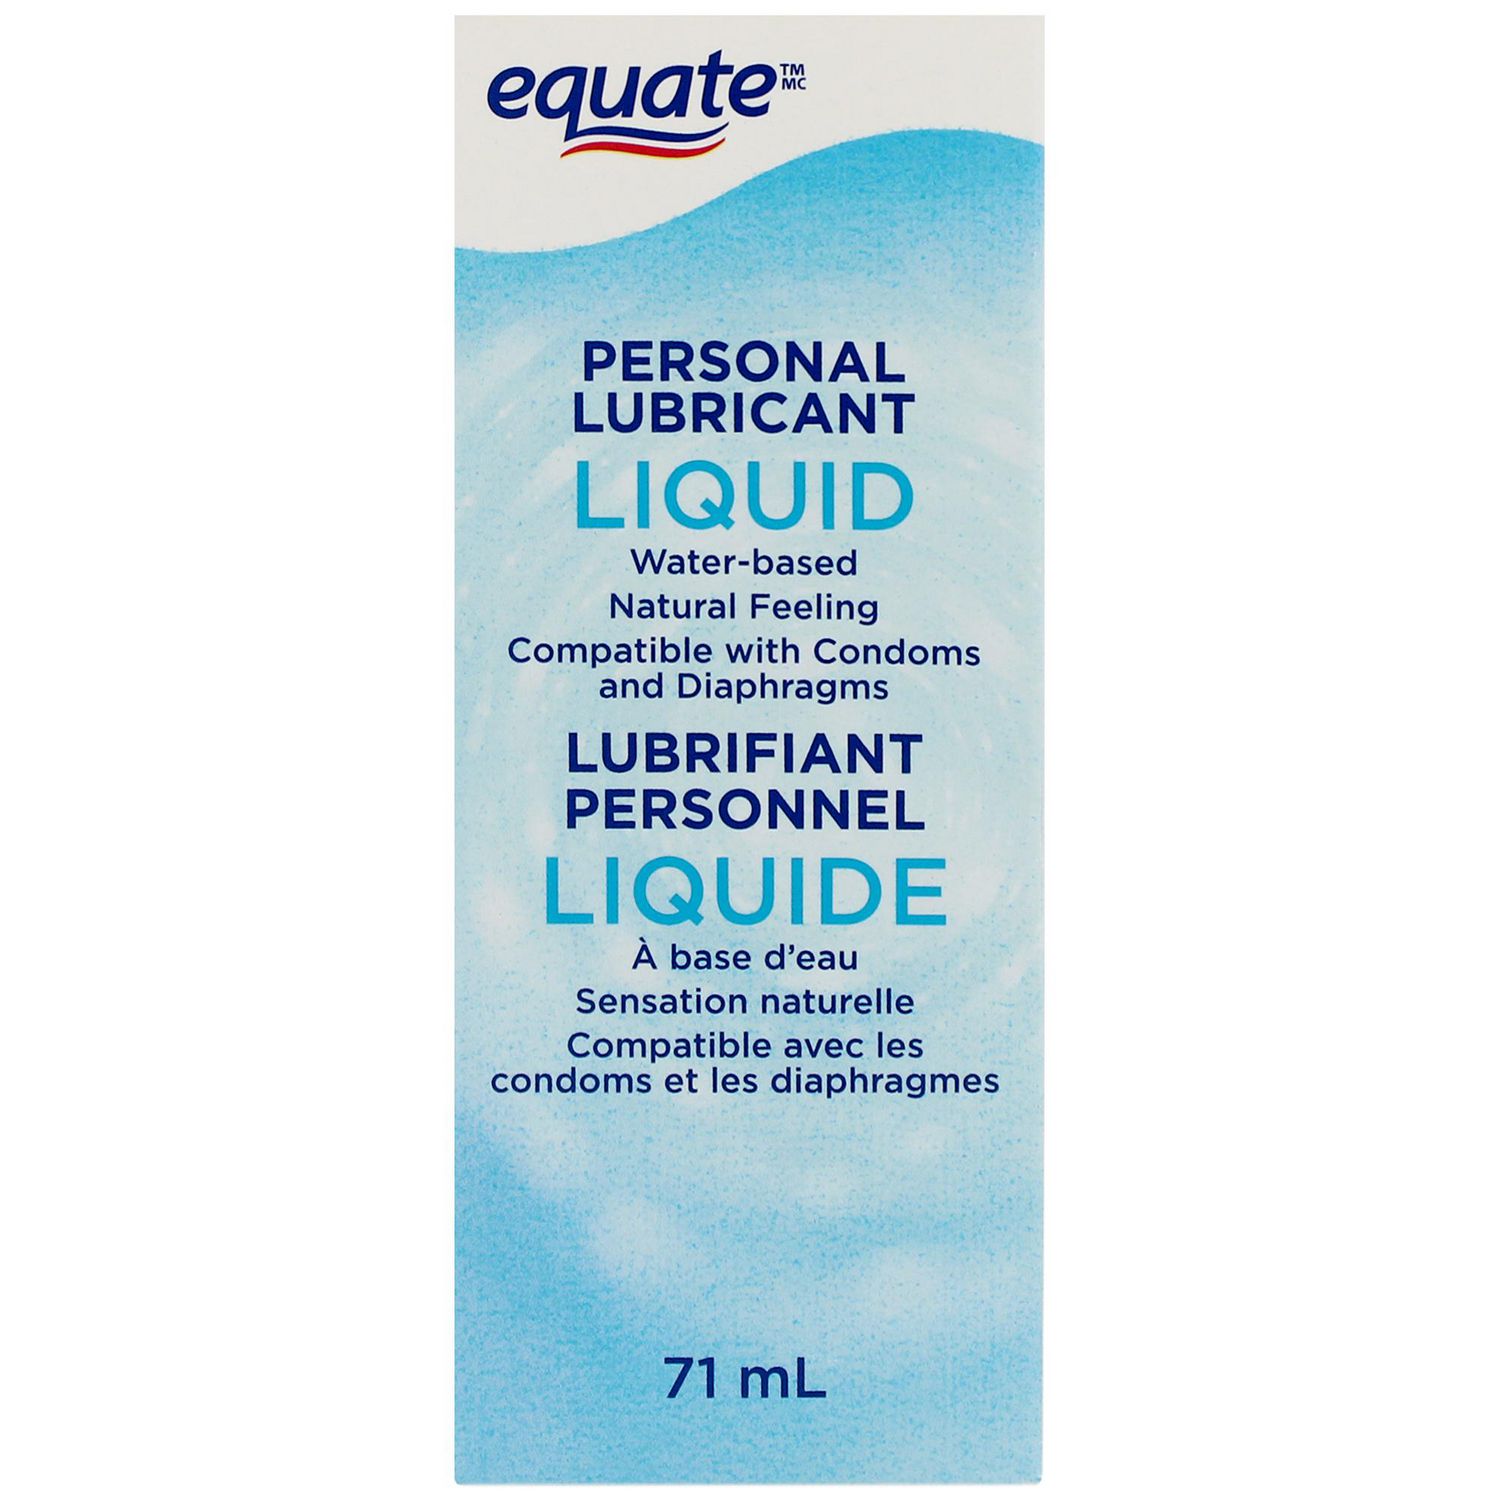 Equate personal lubricant liquid